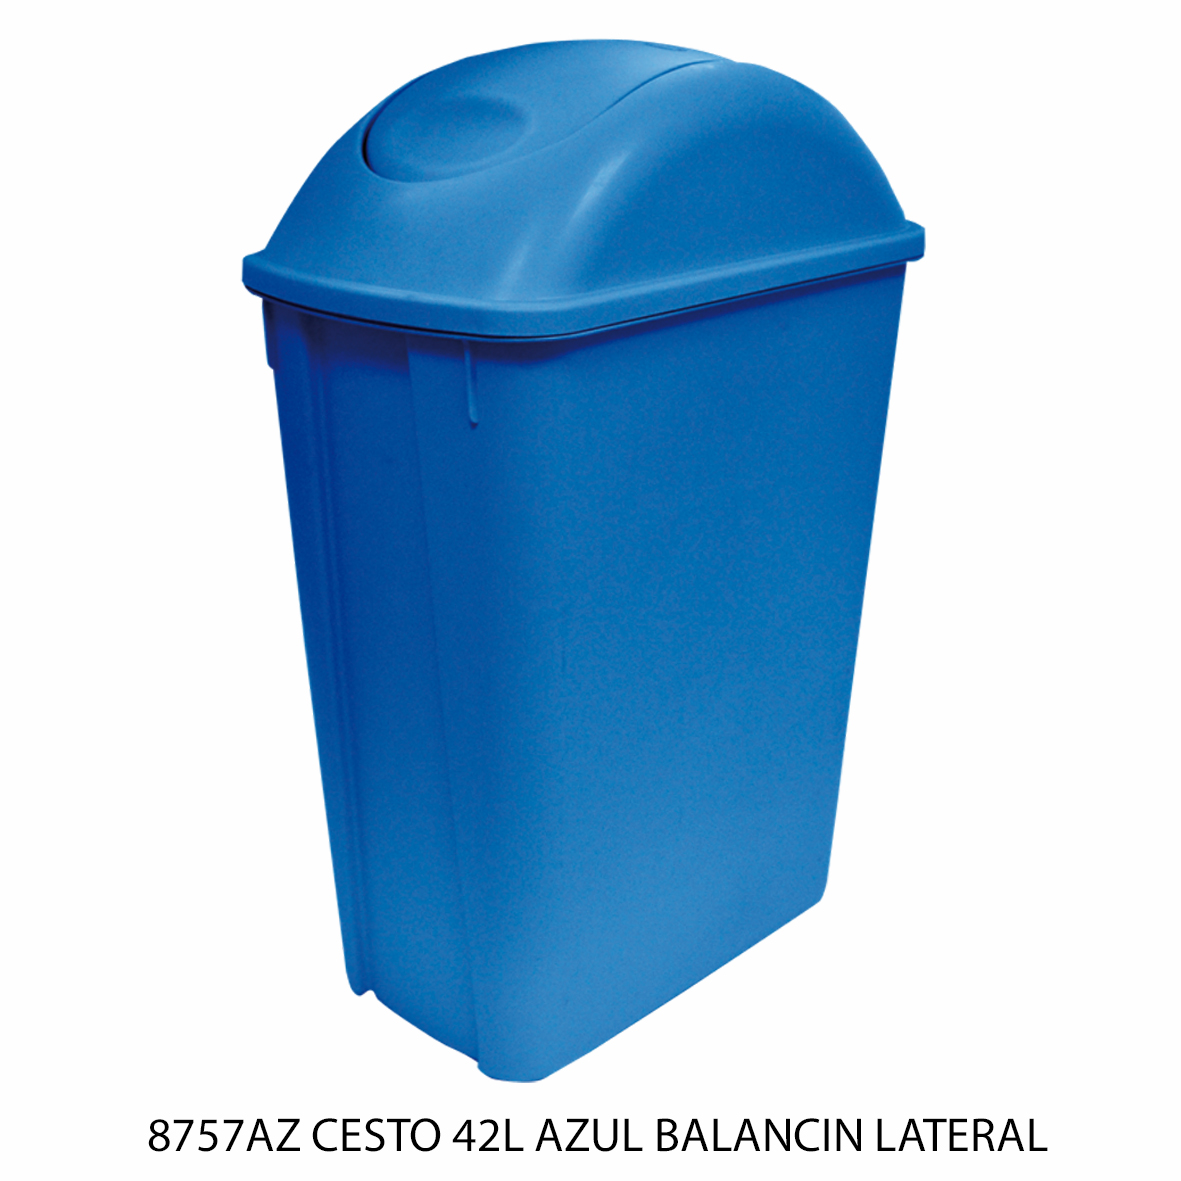 Bote de basura mediano de 42 litros con balancín lateral color azul modelo 8757AZ de Sablón